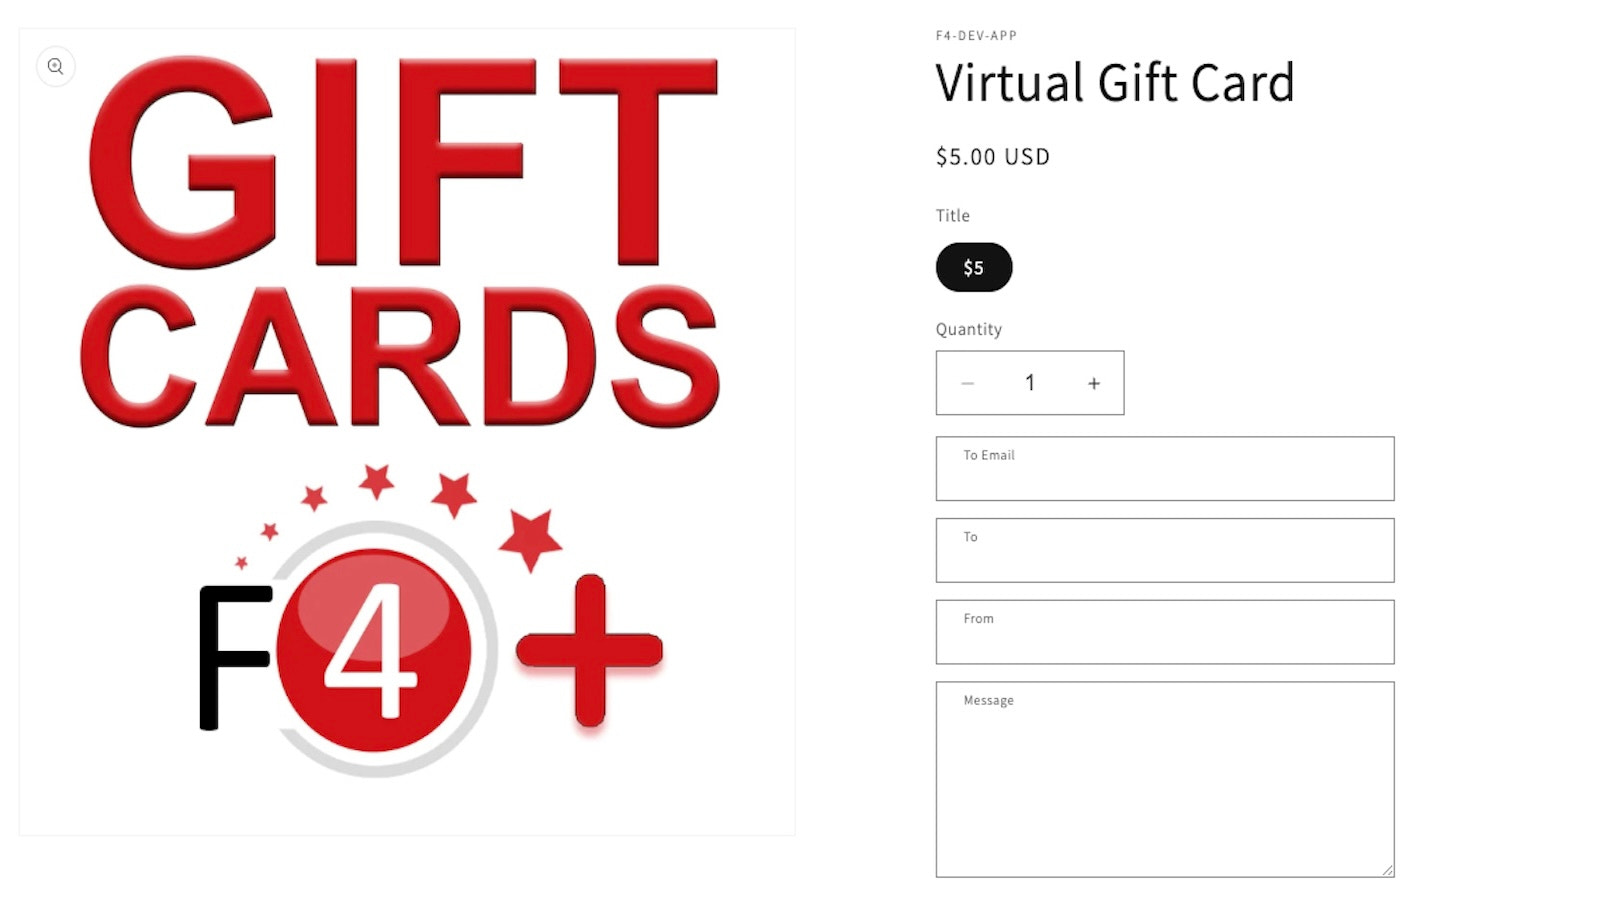 Sælg virtuelle og fysiske gavekort online!